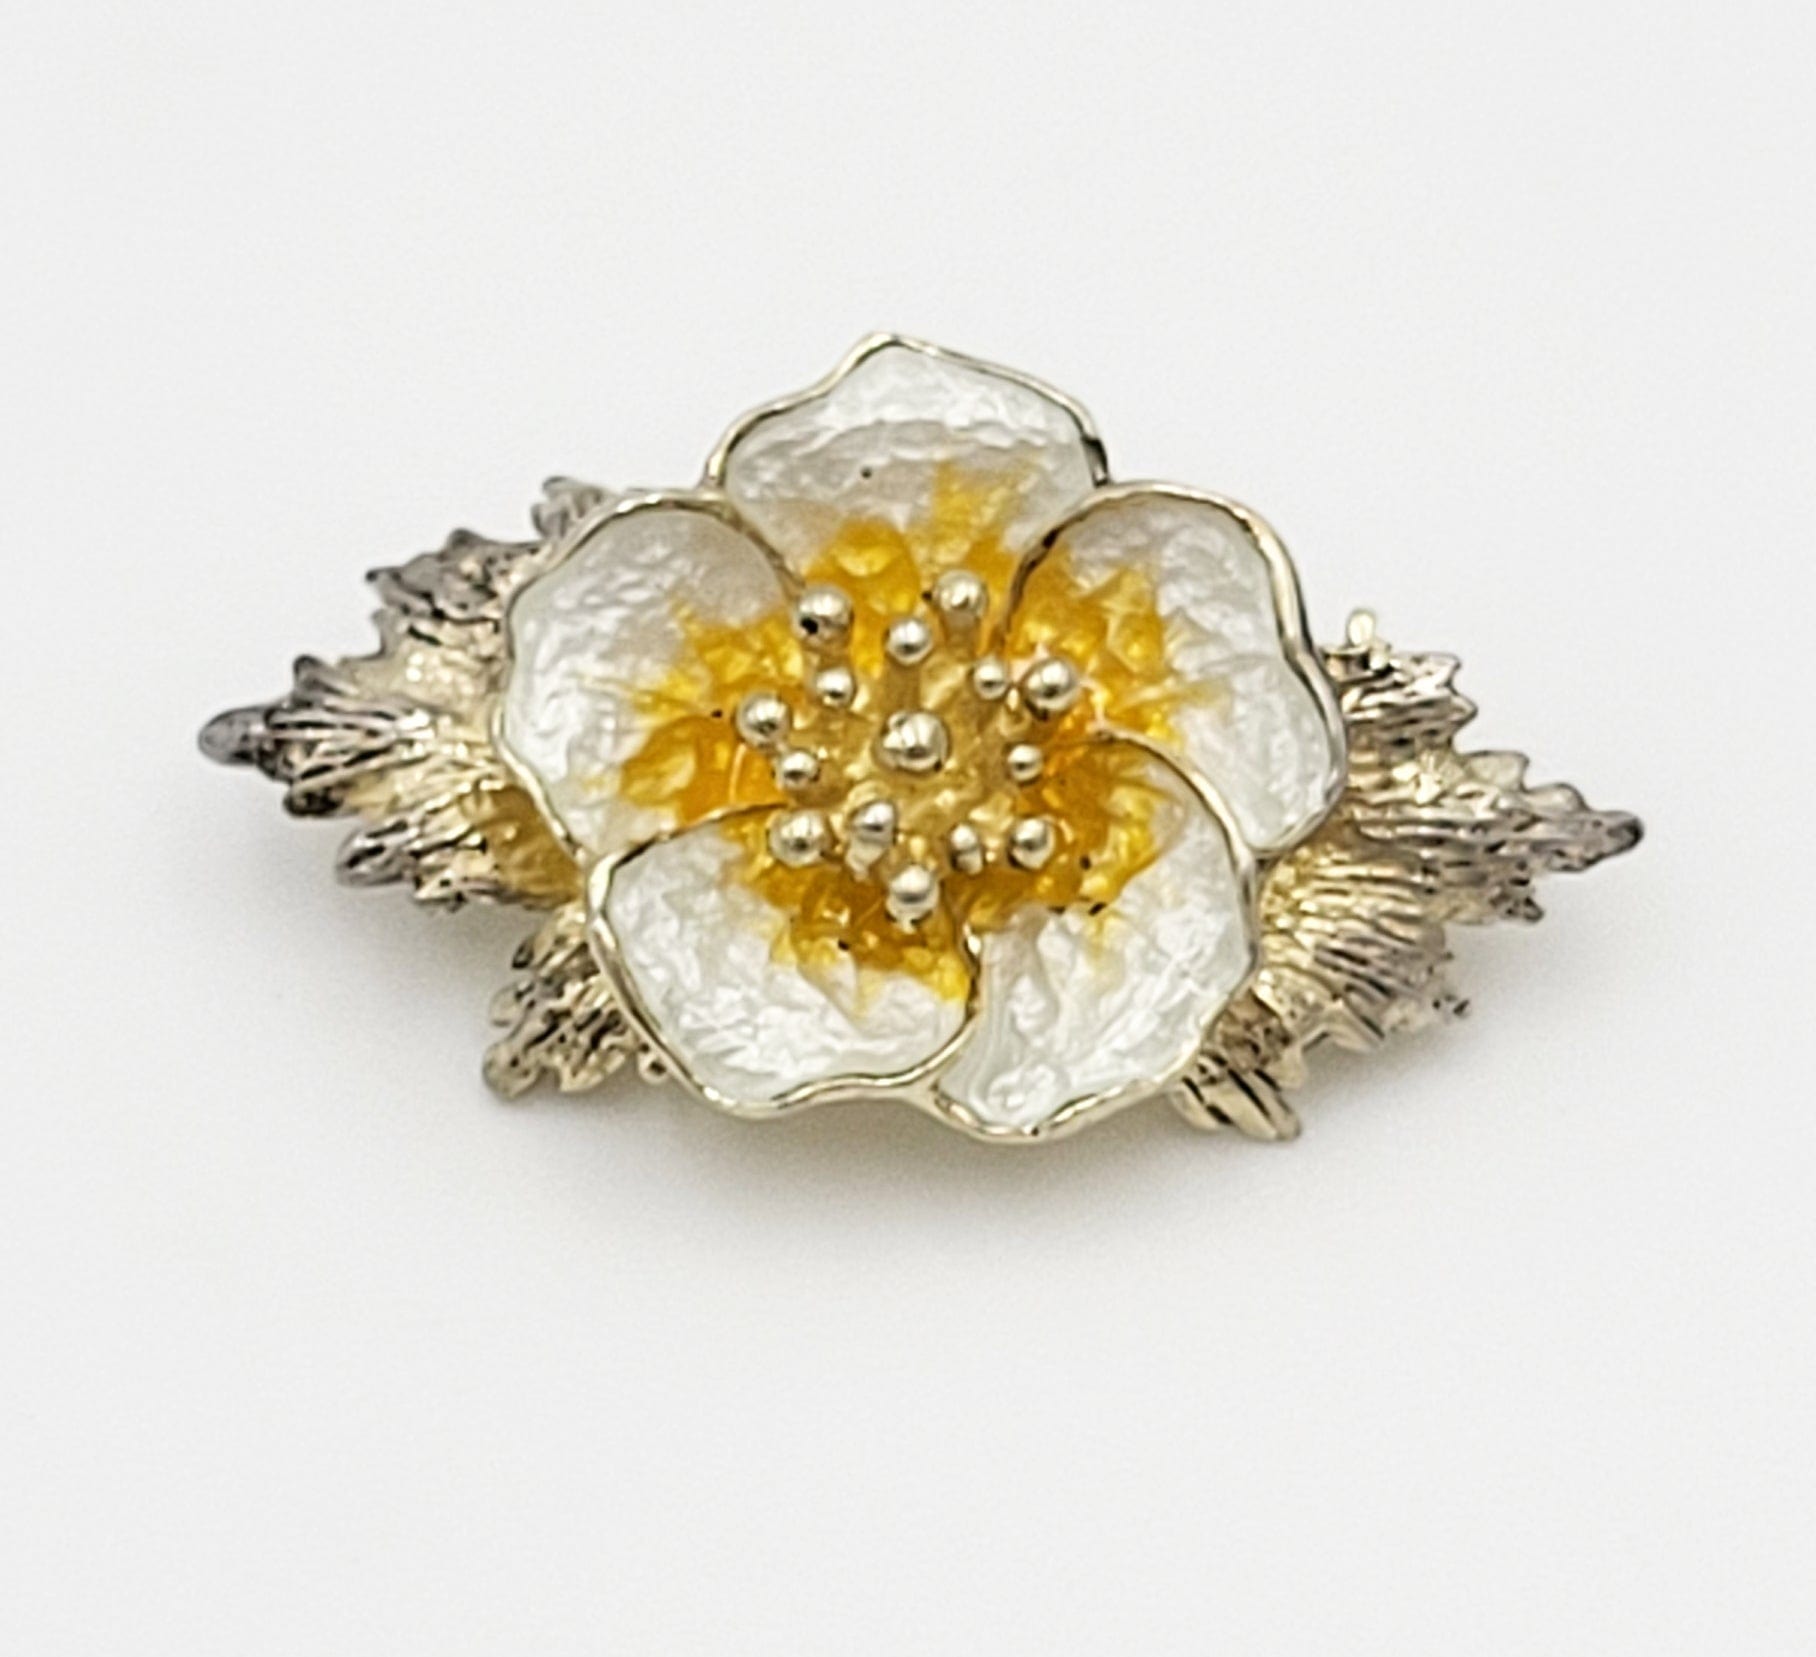 Hroar Prydz Jewelry Norwegian Designer Hroar PRYDZ Sterling Enamel 3-D Flower Brooch Circa 1930s